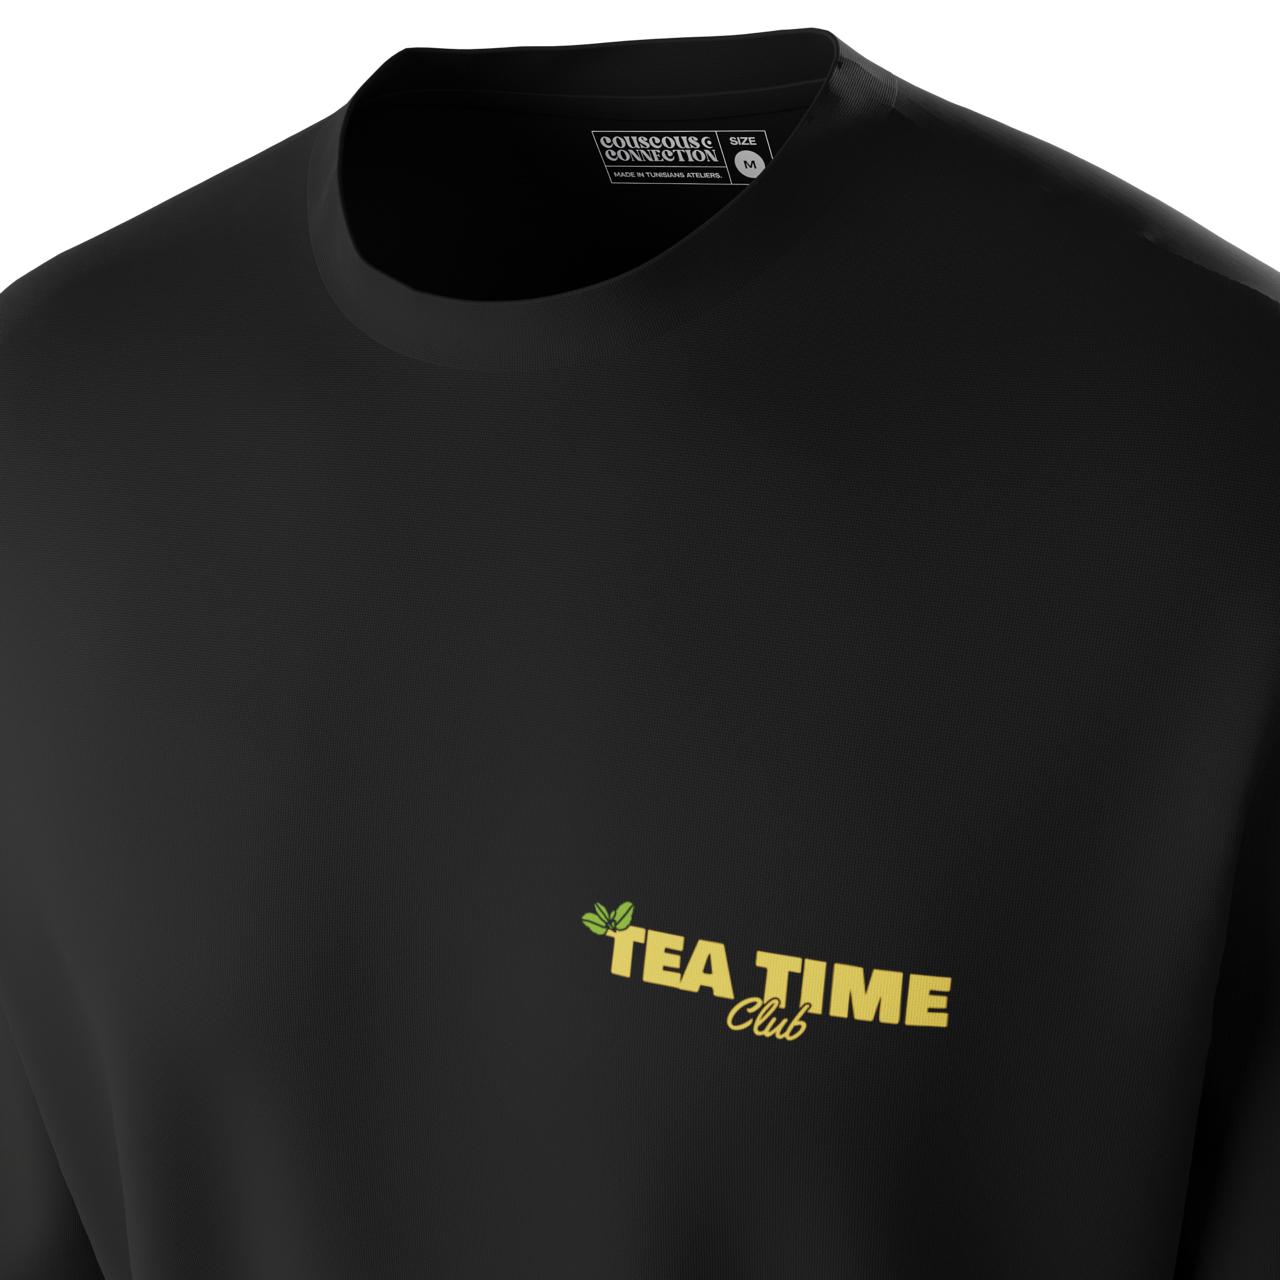 Tea Time Tshirt